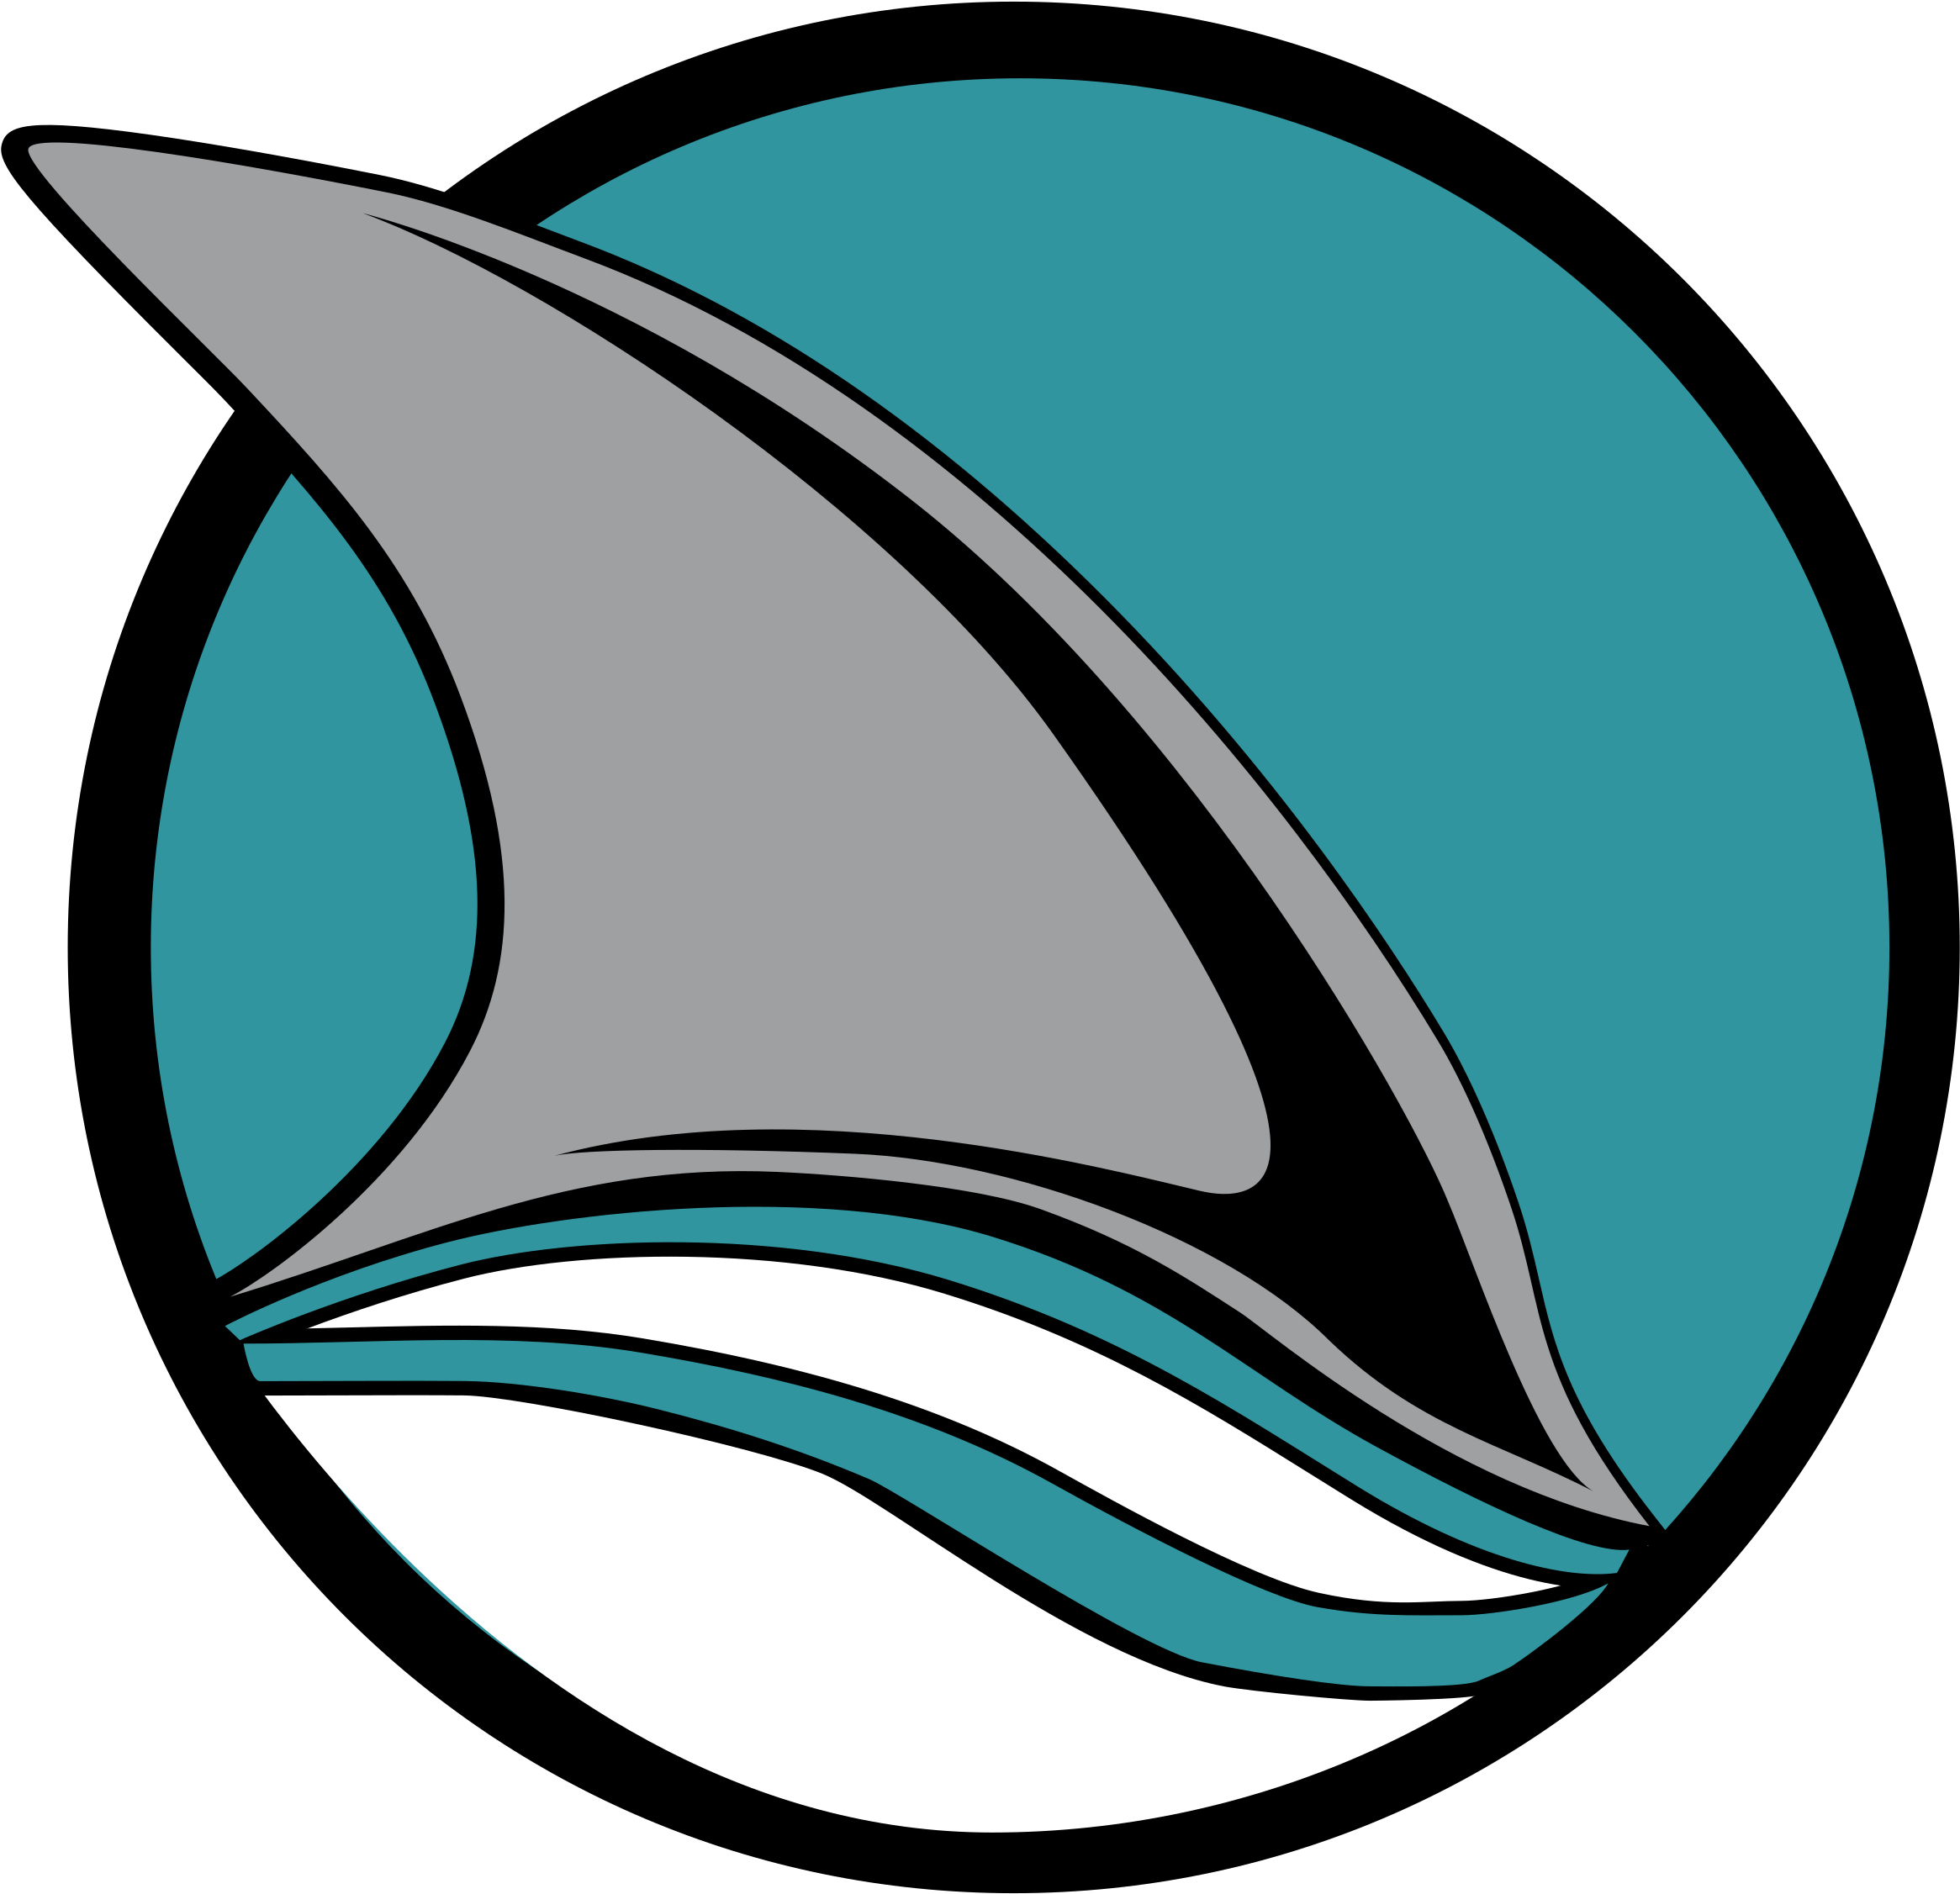 San Jose Sharks Logo - San Jose Sharks Logos (2400x2400)